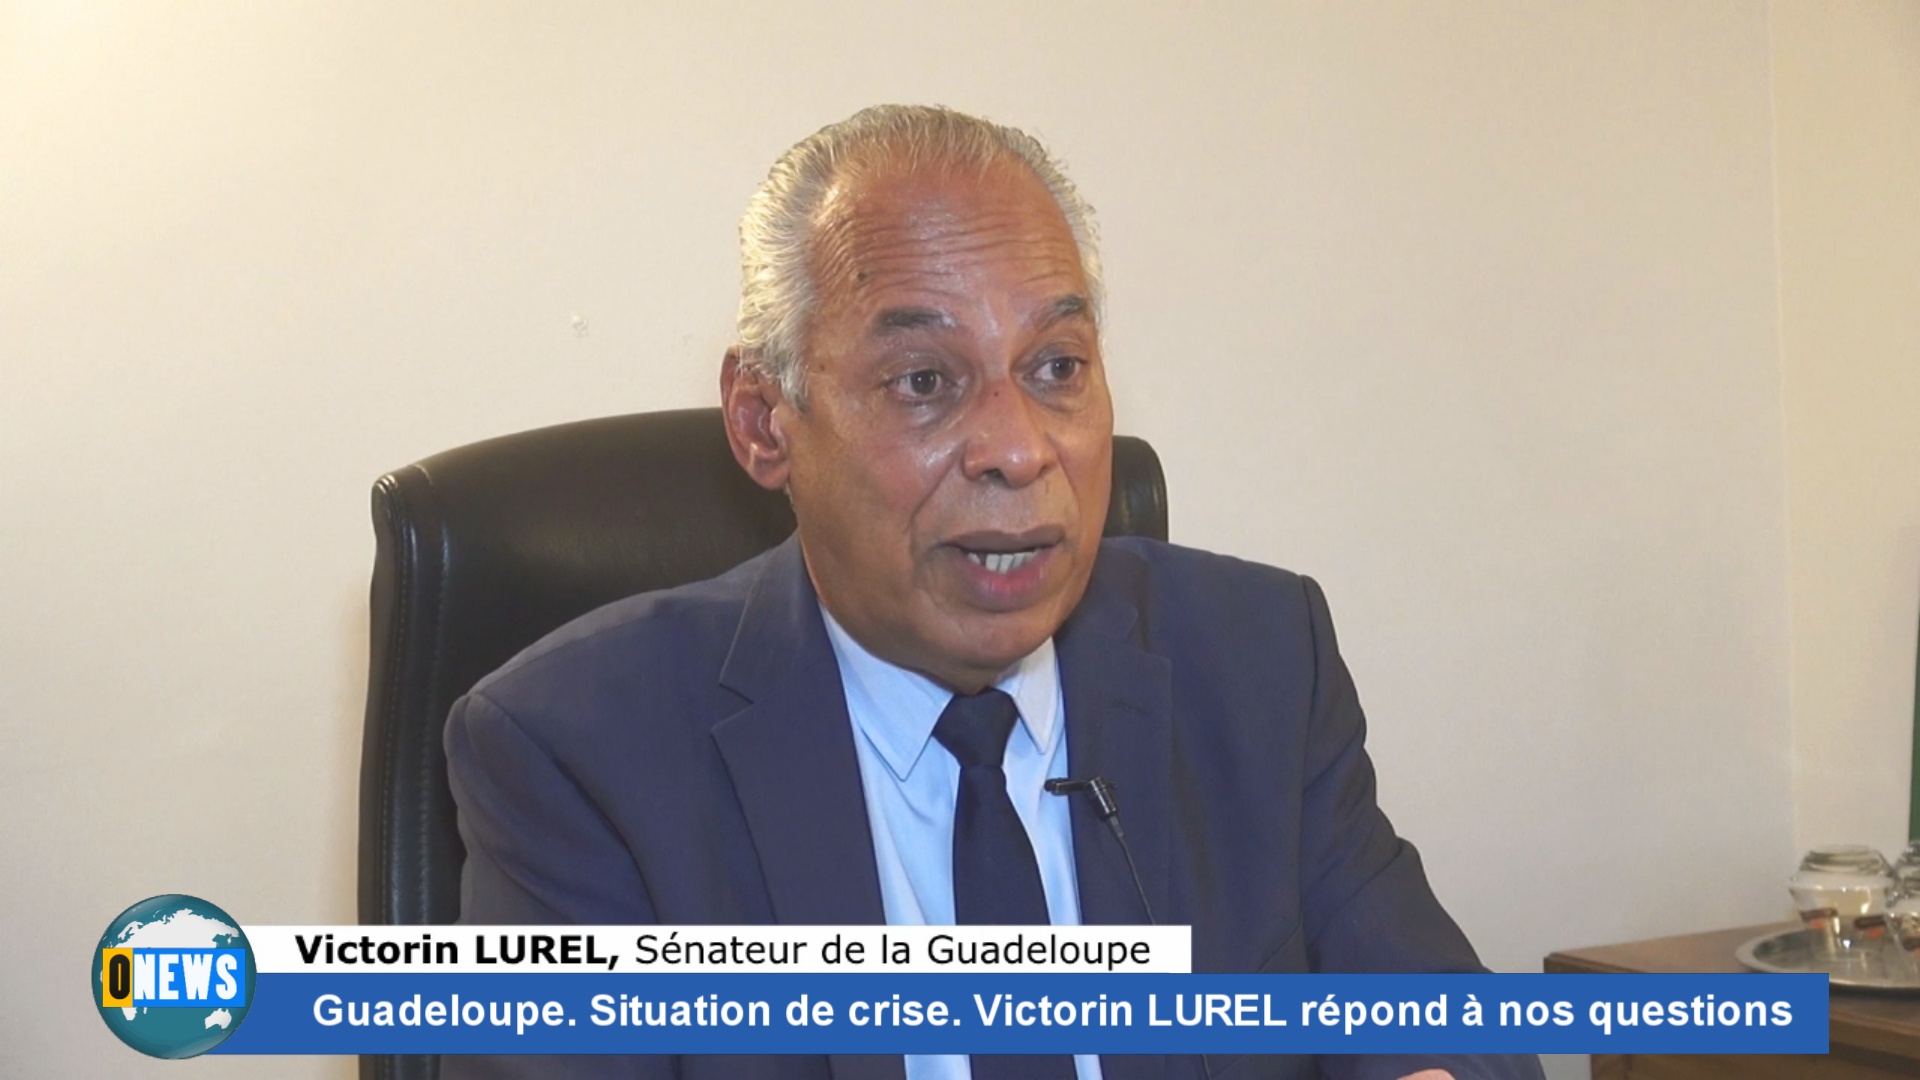 [Vidéo]Guadeloupe. Crise. Victorin LUREL Sénateur répond à Onews. Interview complète